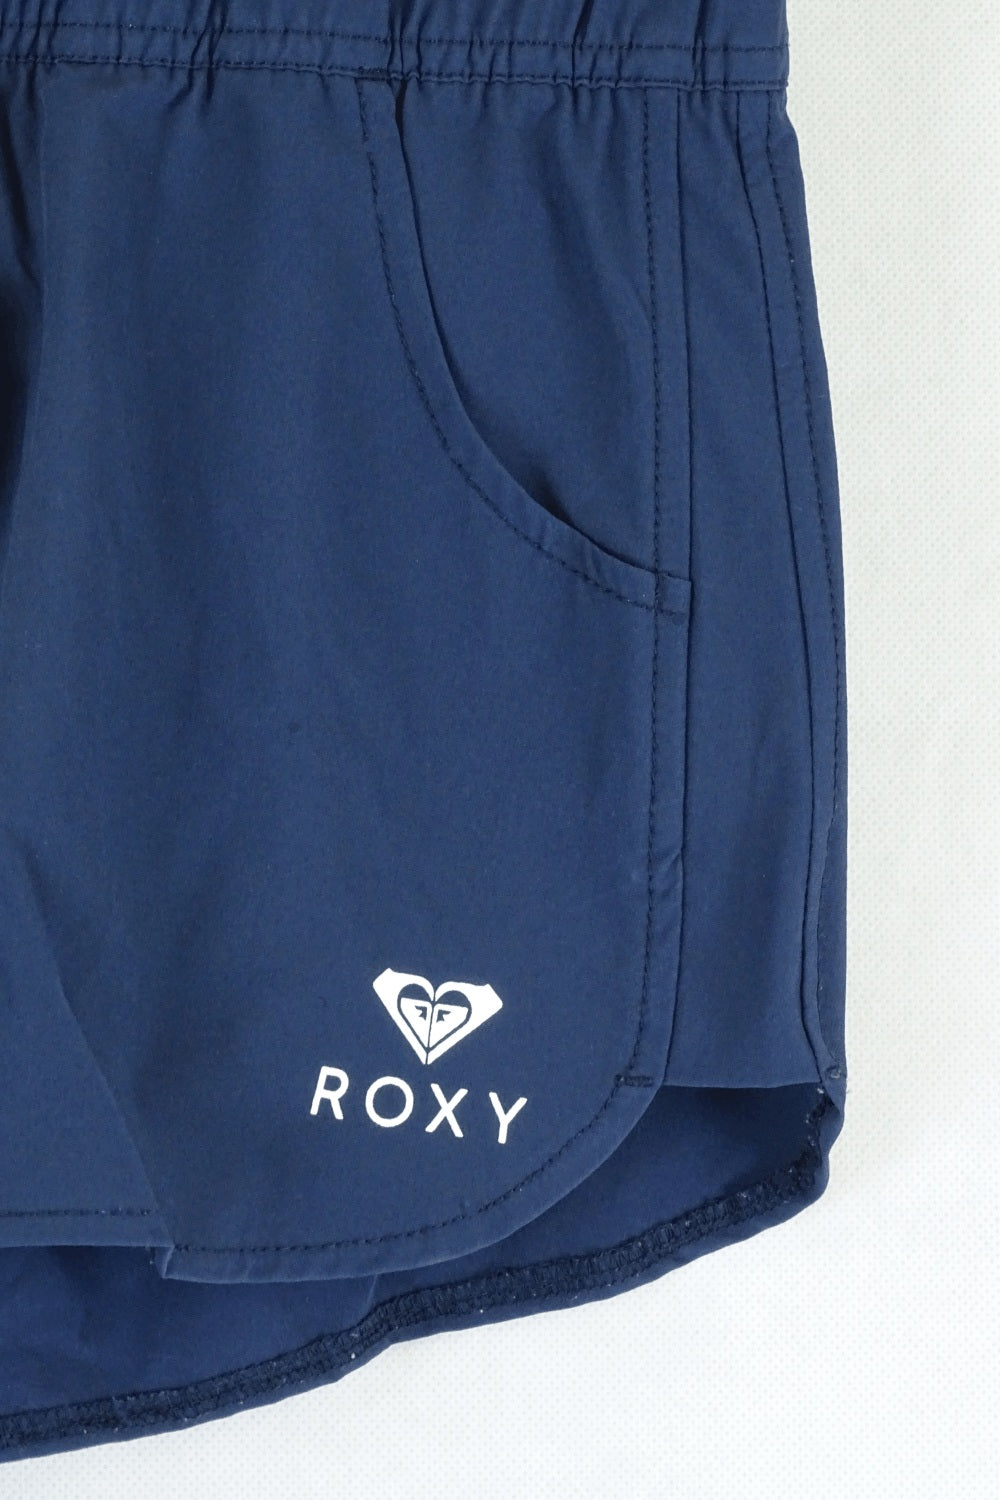 Navy Roxy Shorts S (8AU)